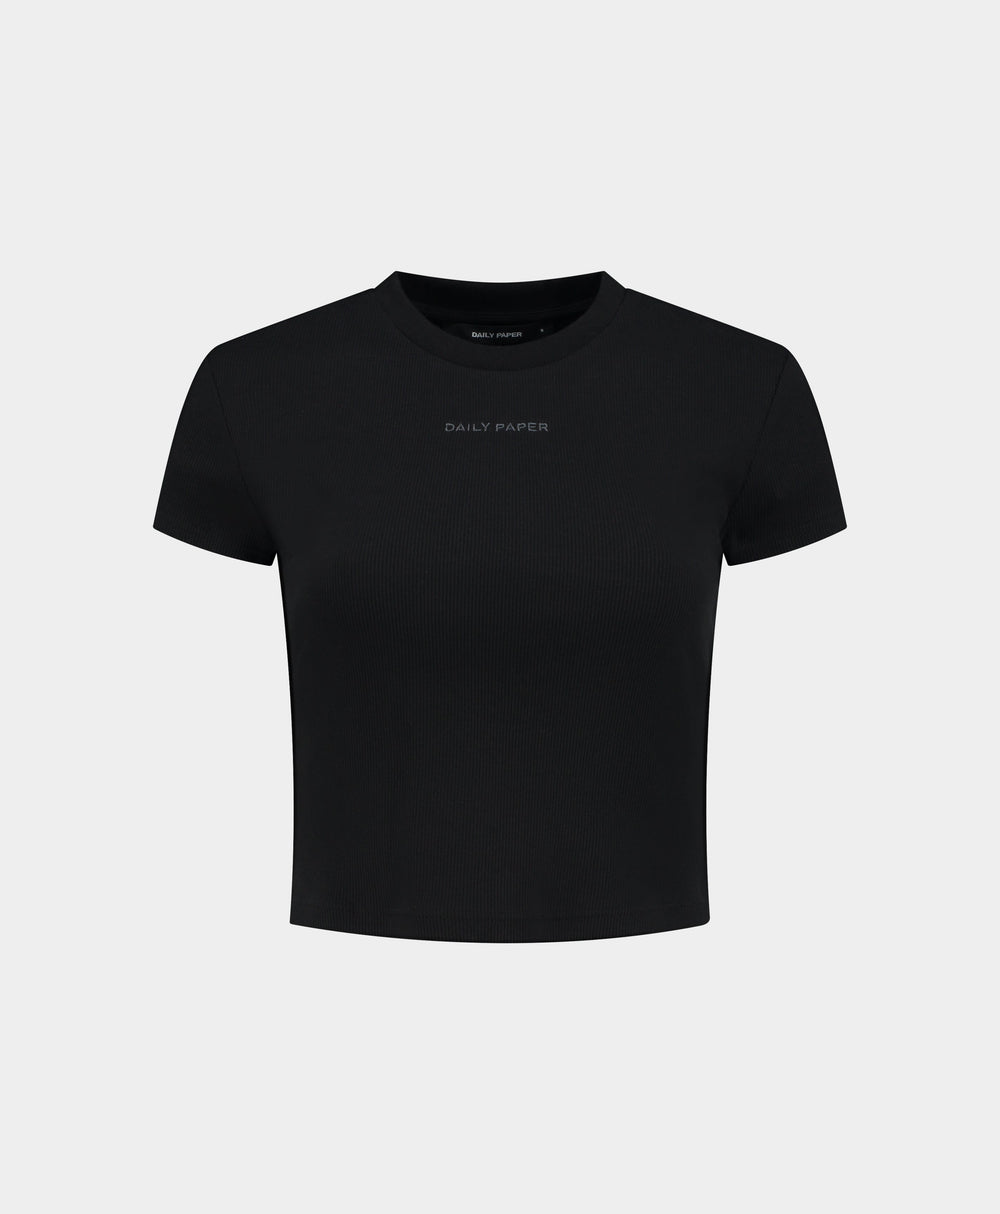 DP - Black Logotype Cropped T-Shirt - Packshot - Front